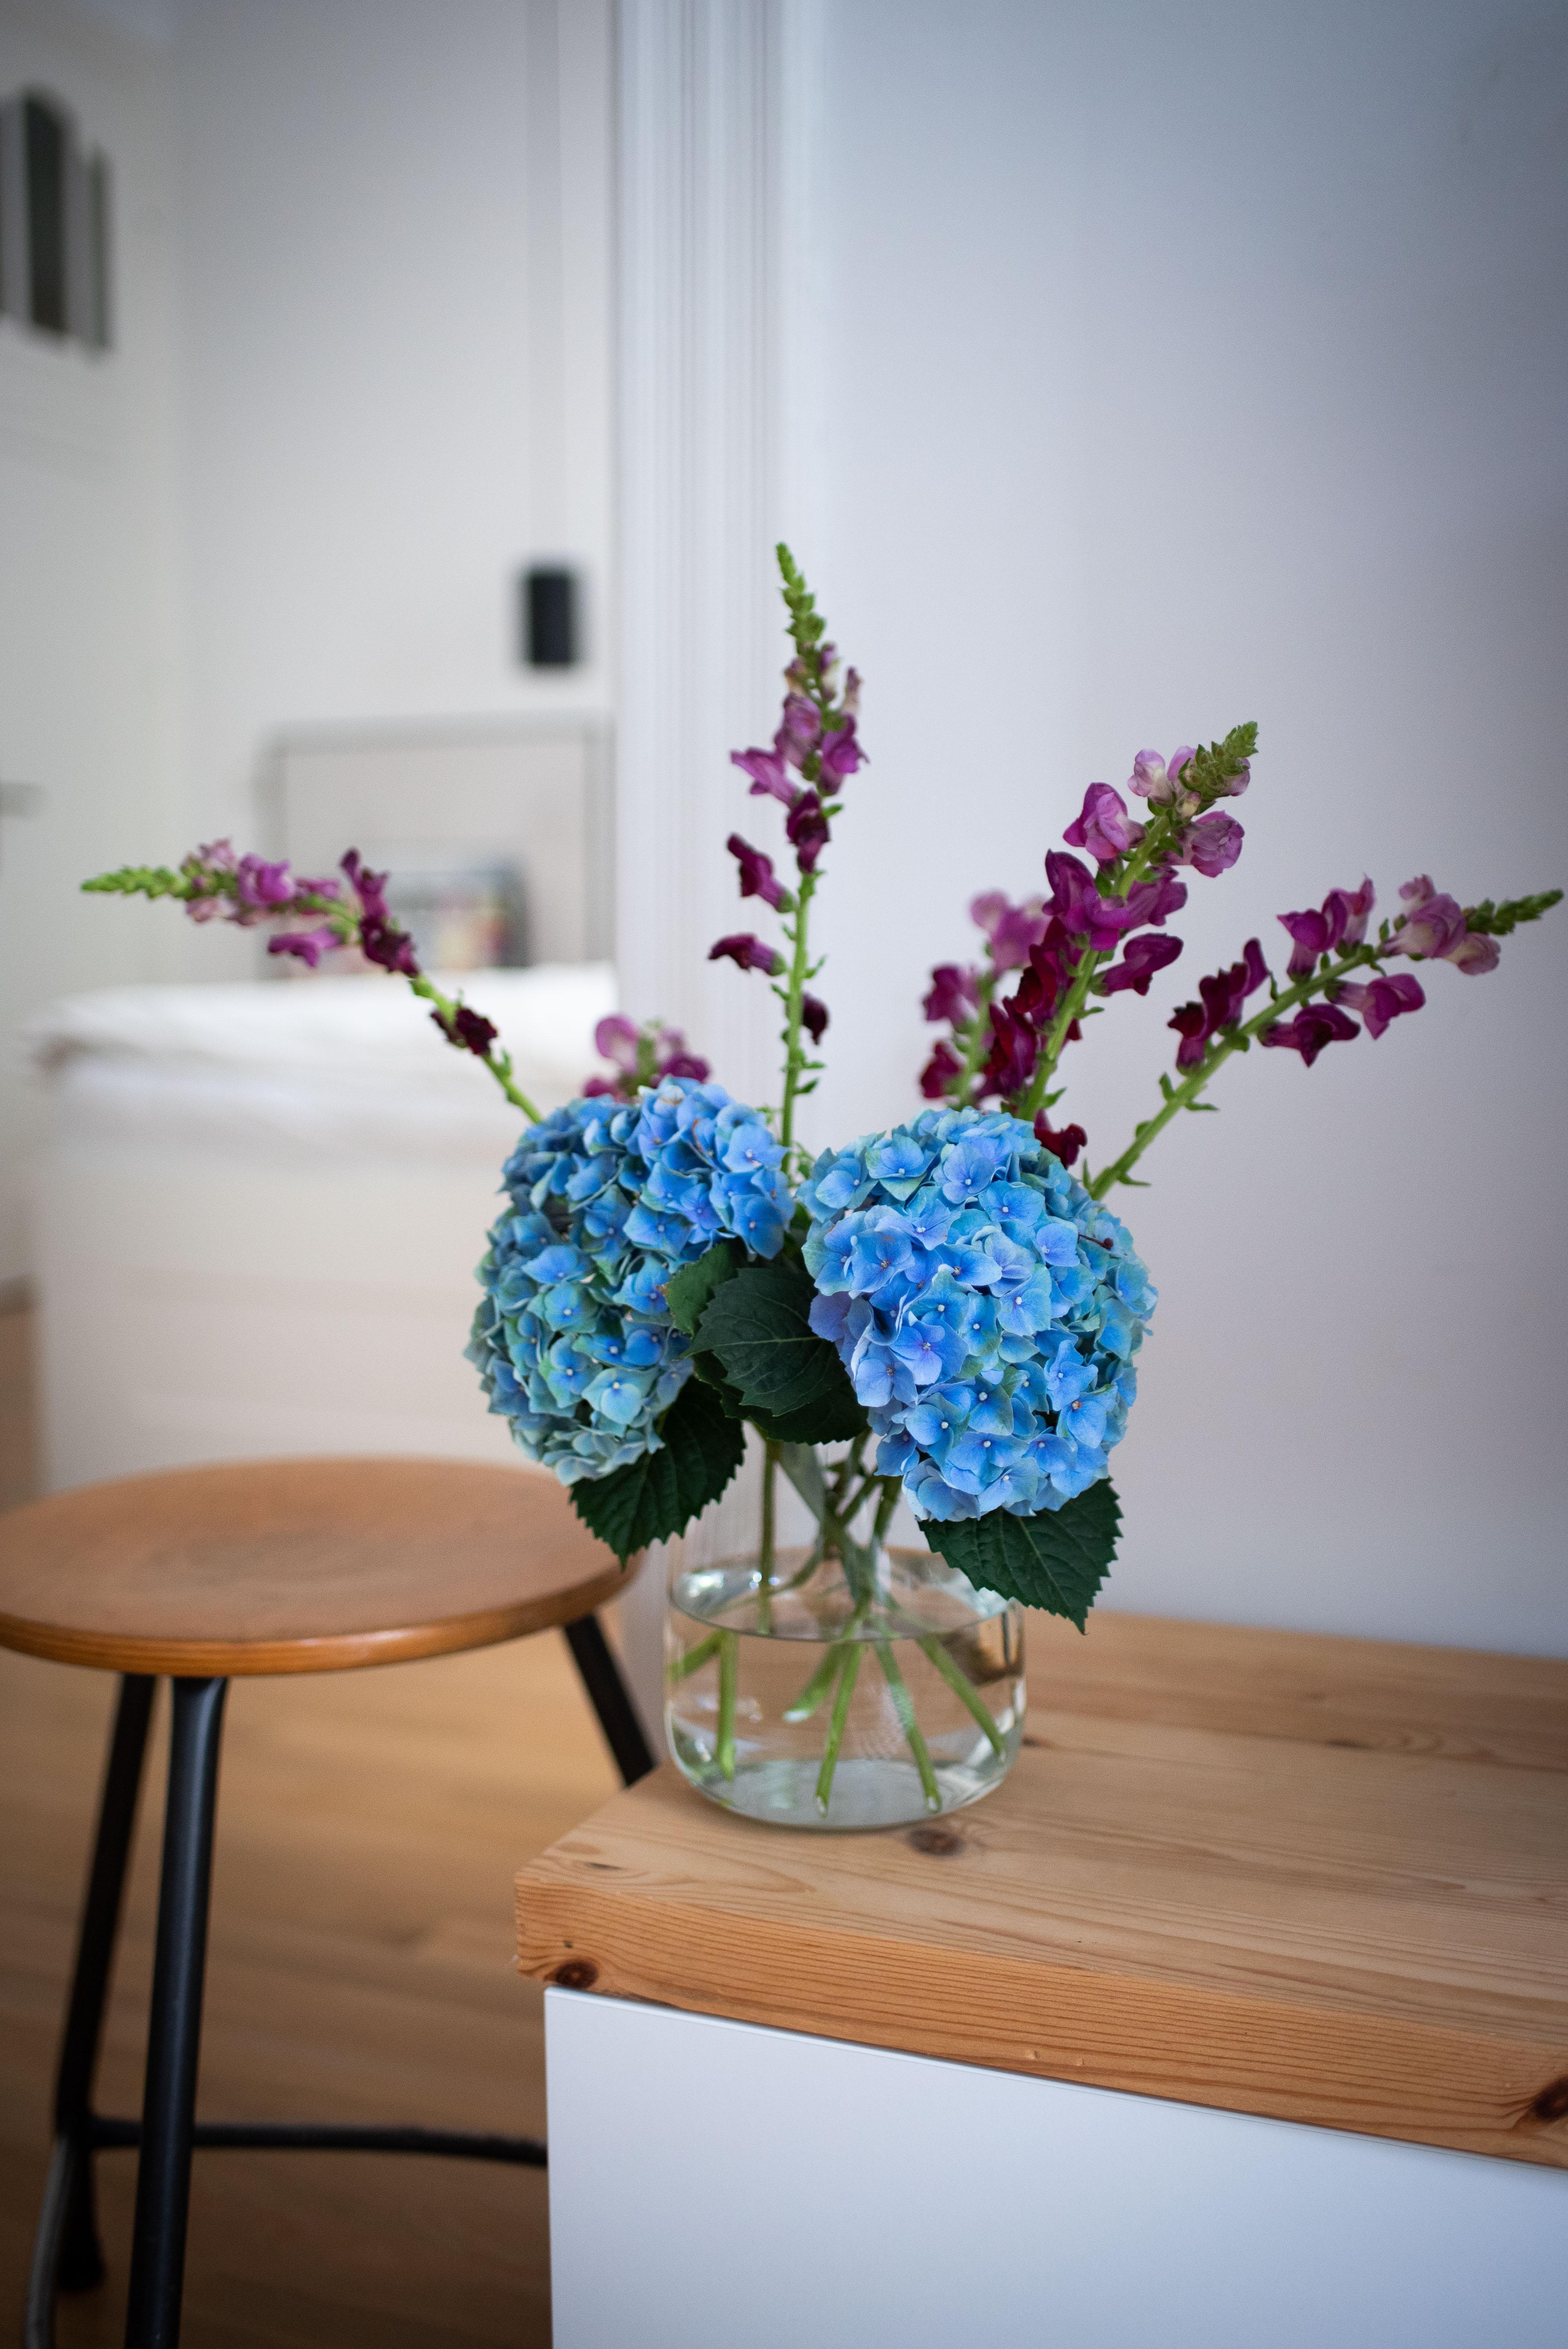 Heute ganz schlicht aus Glas #vasensammlung #vase #minimalism #hortensien #interiordesign #vintage #ikeahack